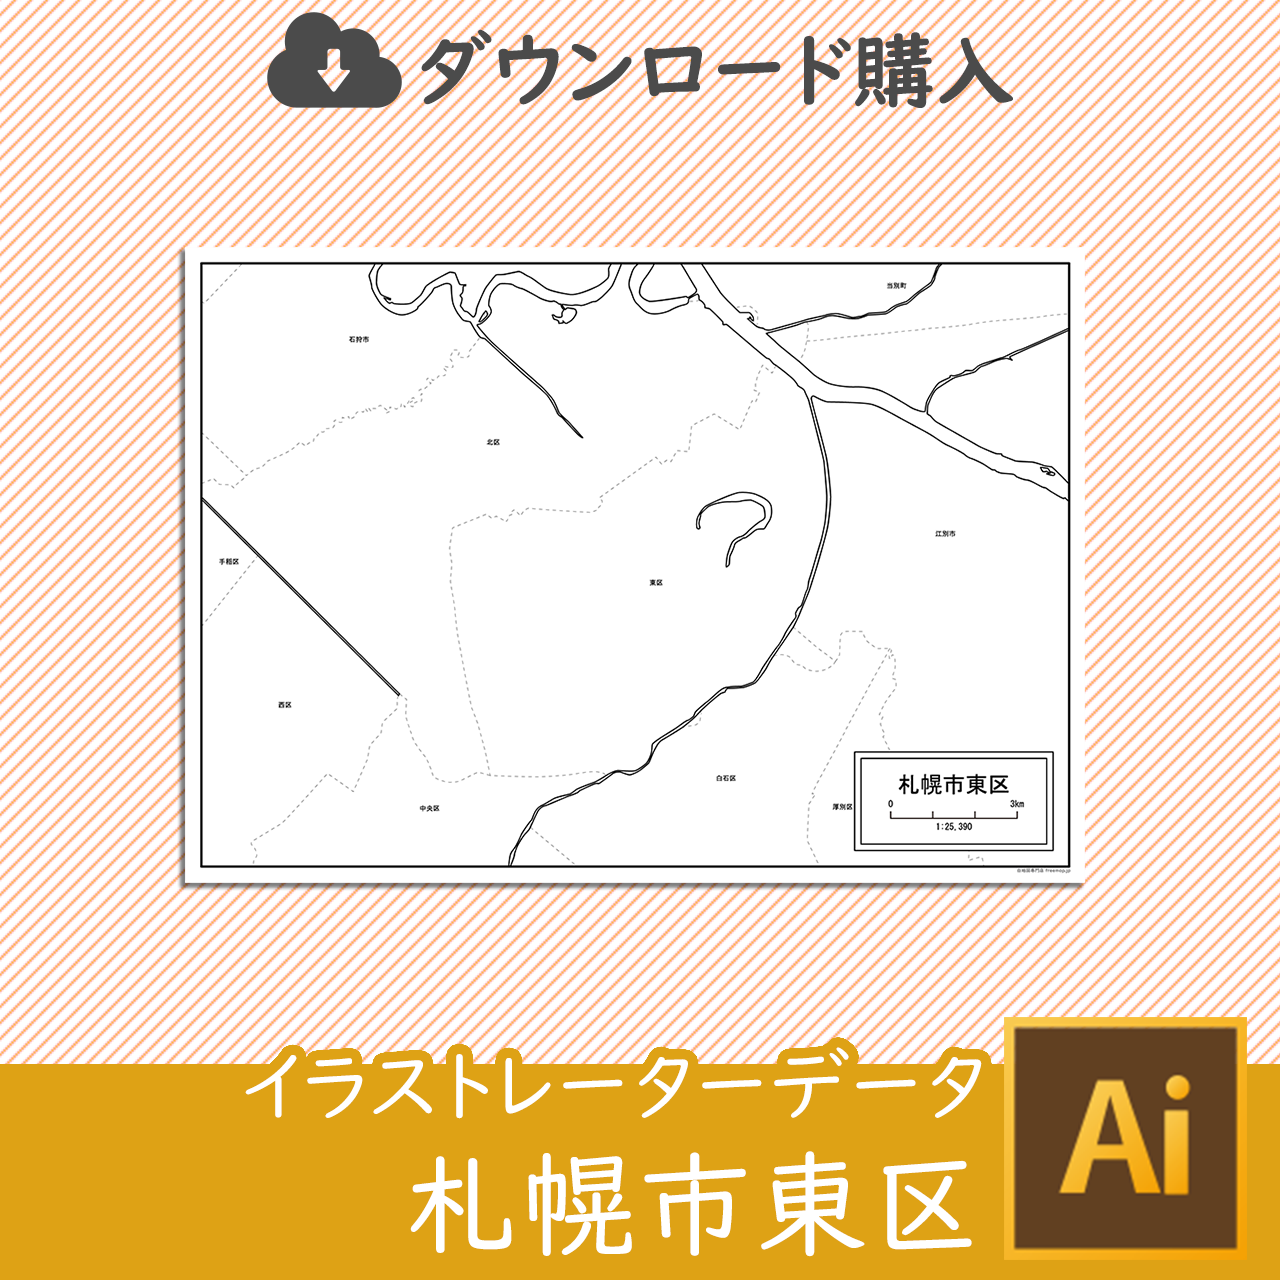 札幌市東区のaiデータのサムネイル画像